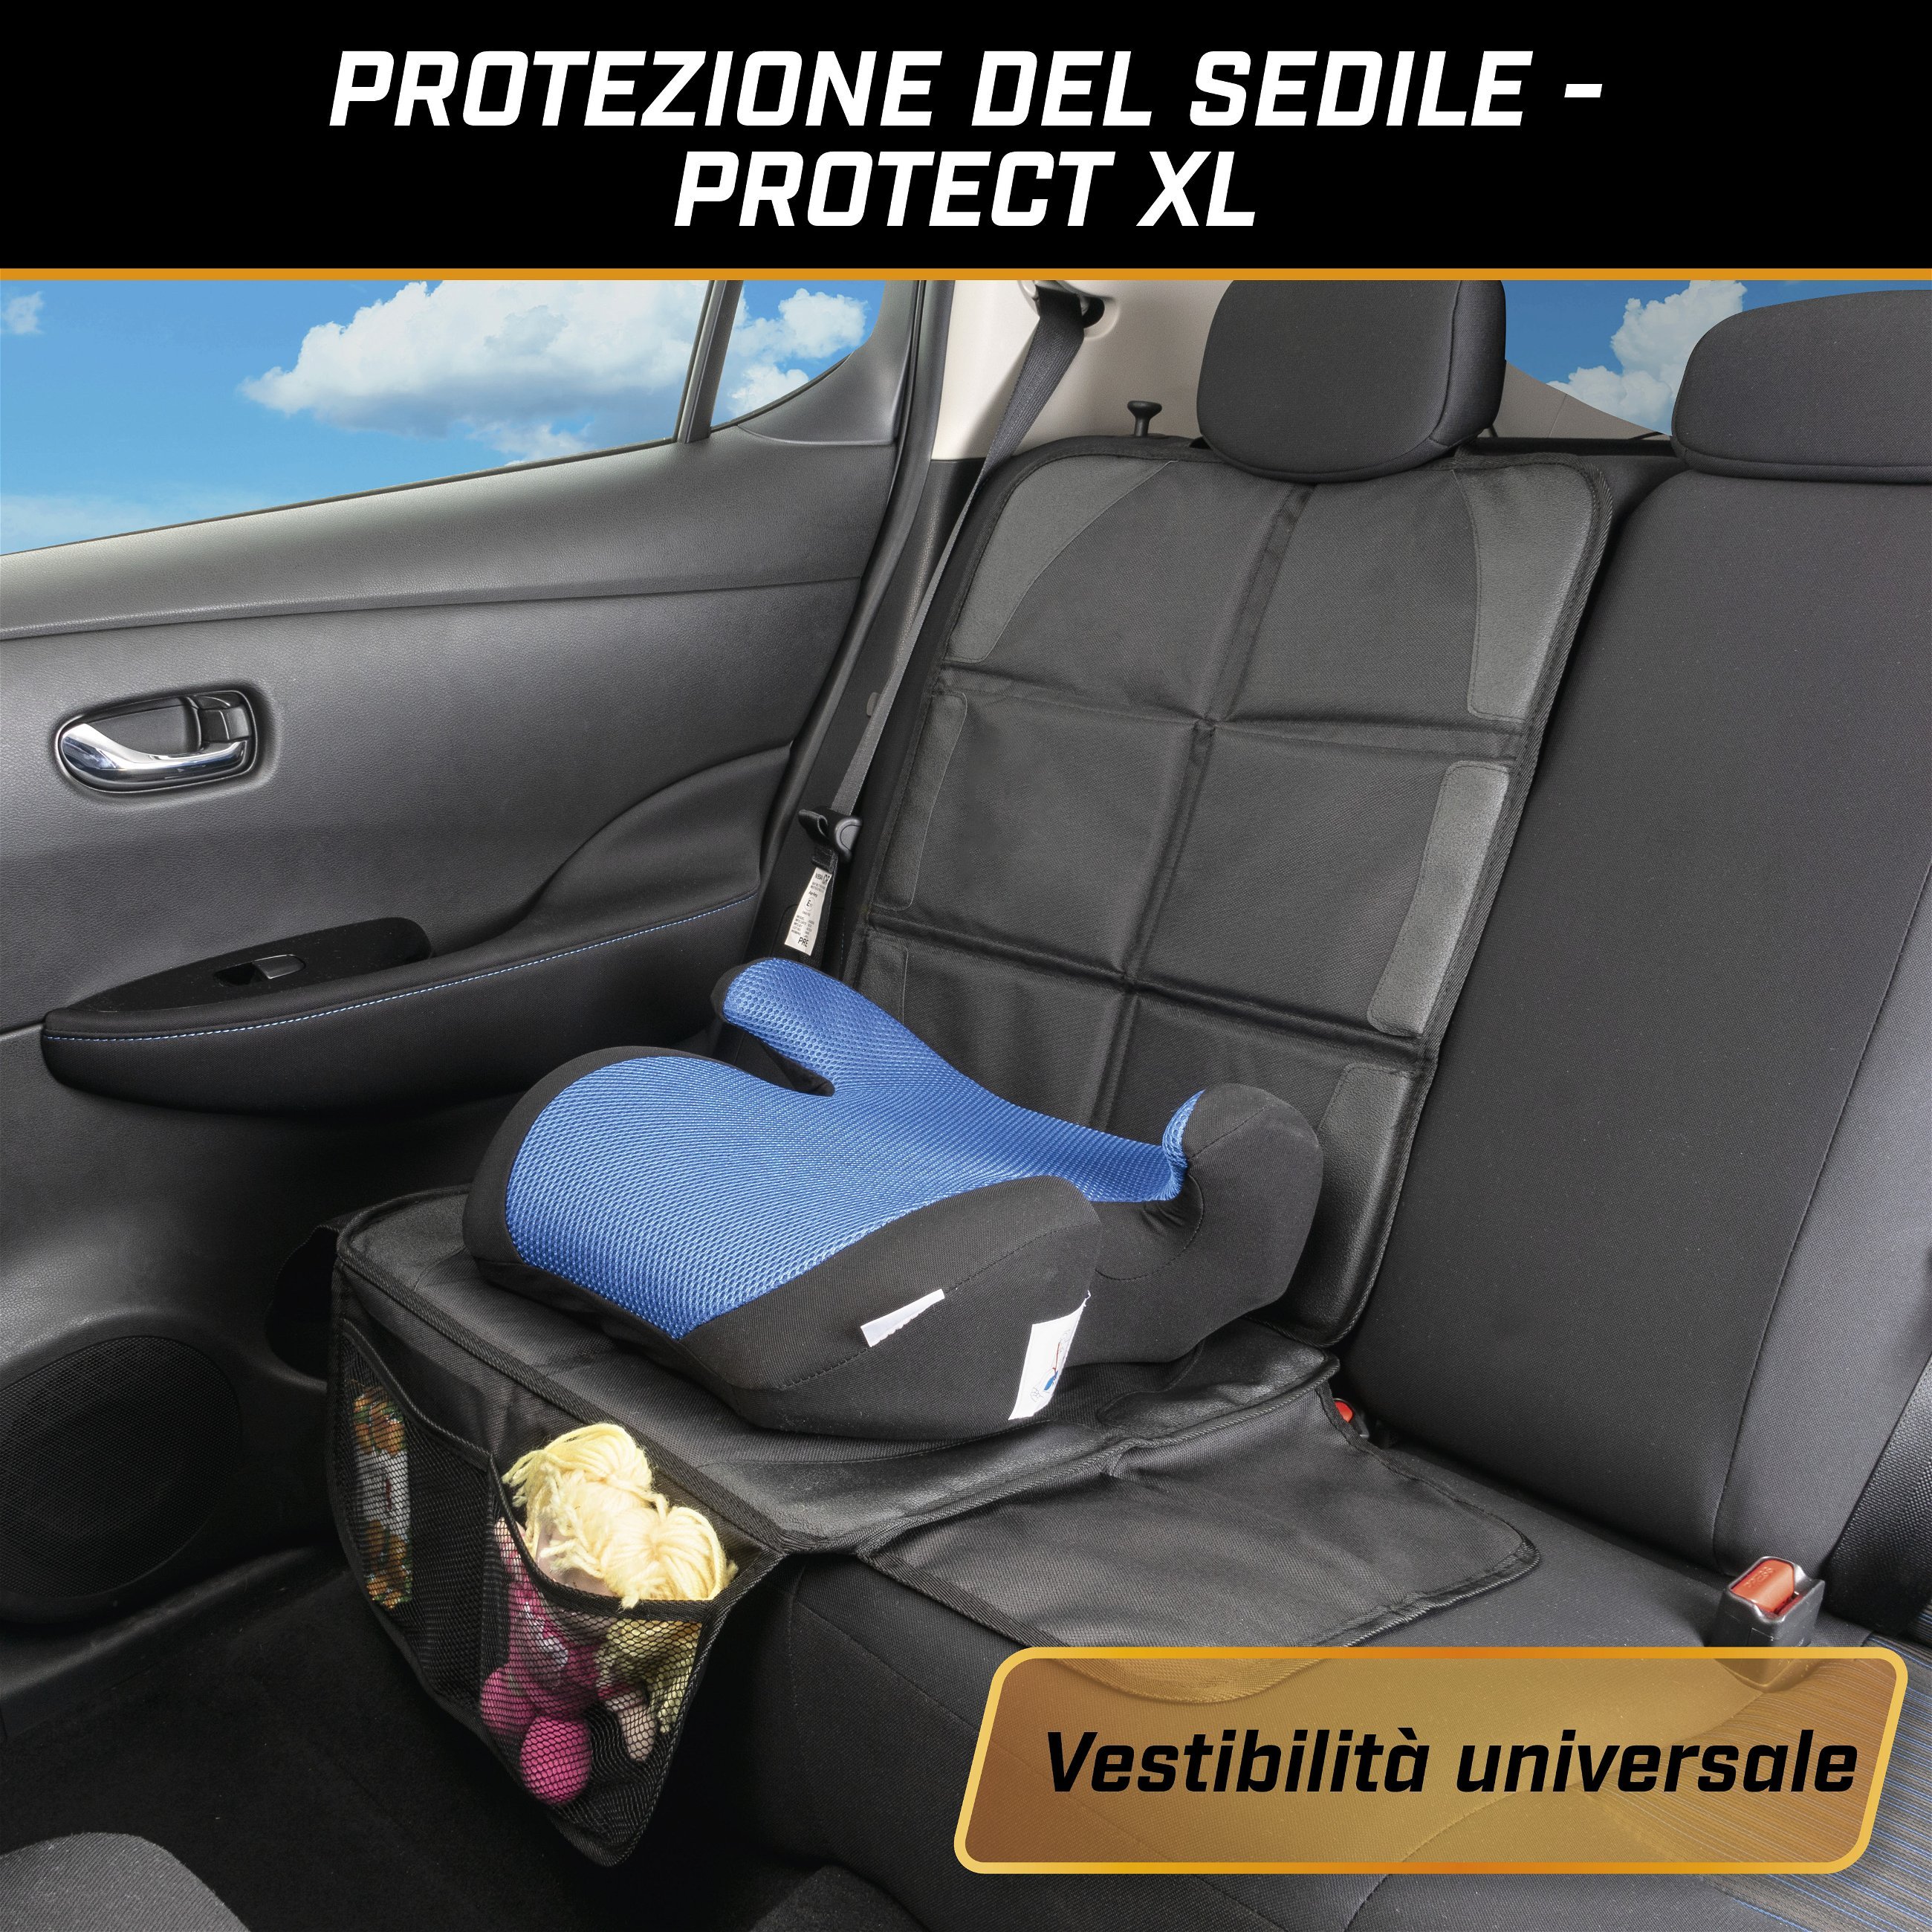 Cuscino per seggiolino Protect XL, cuscinetto protettivo per bambini nero